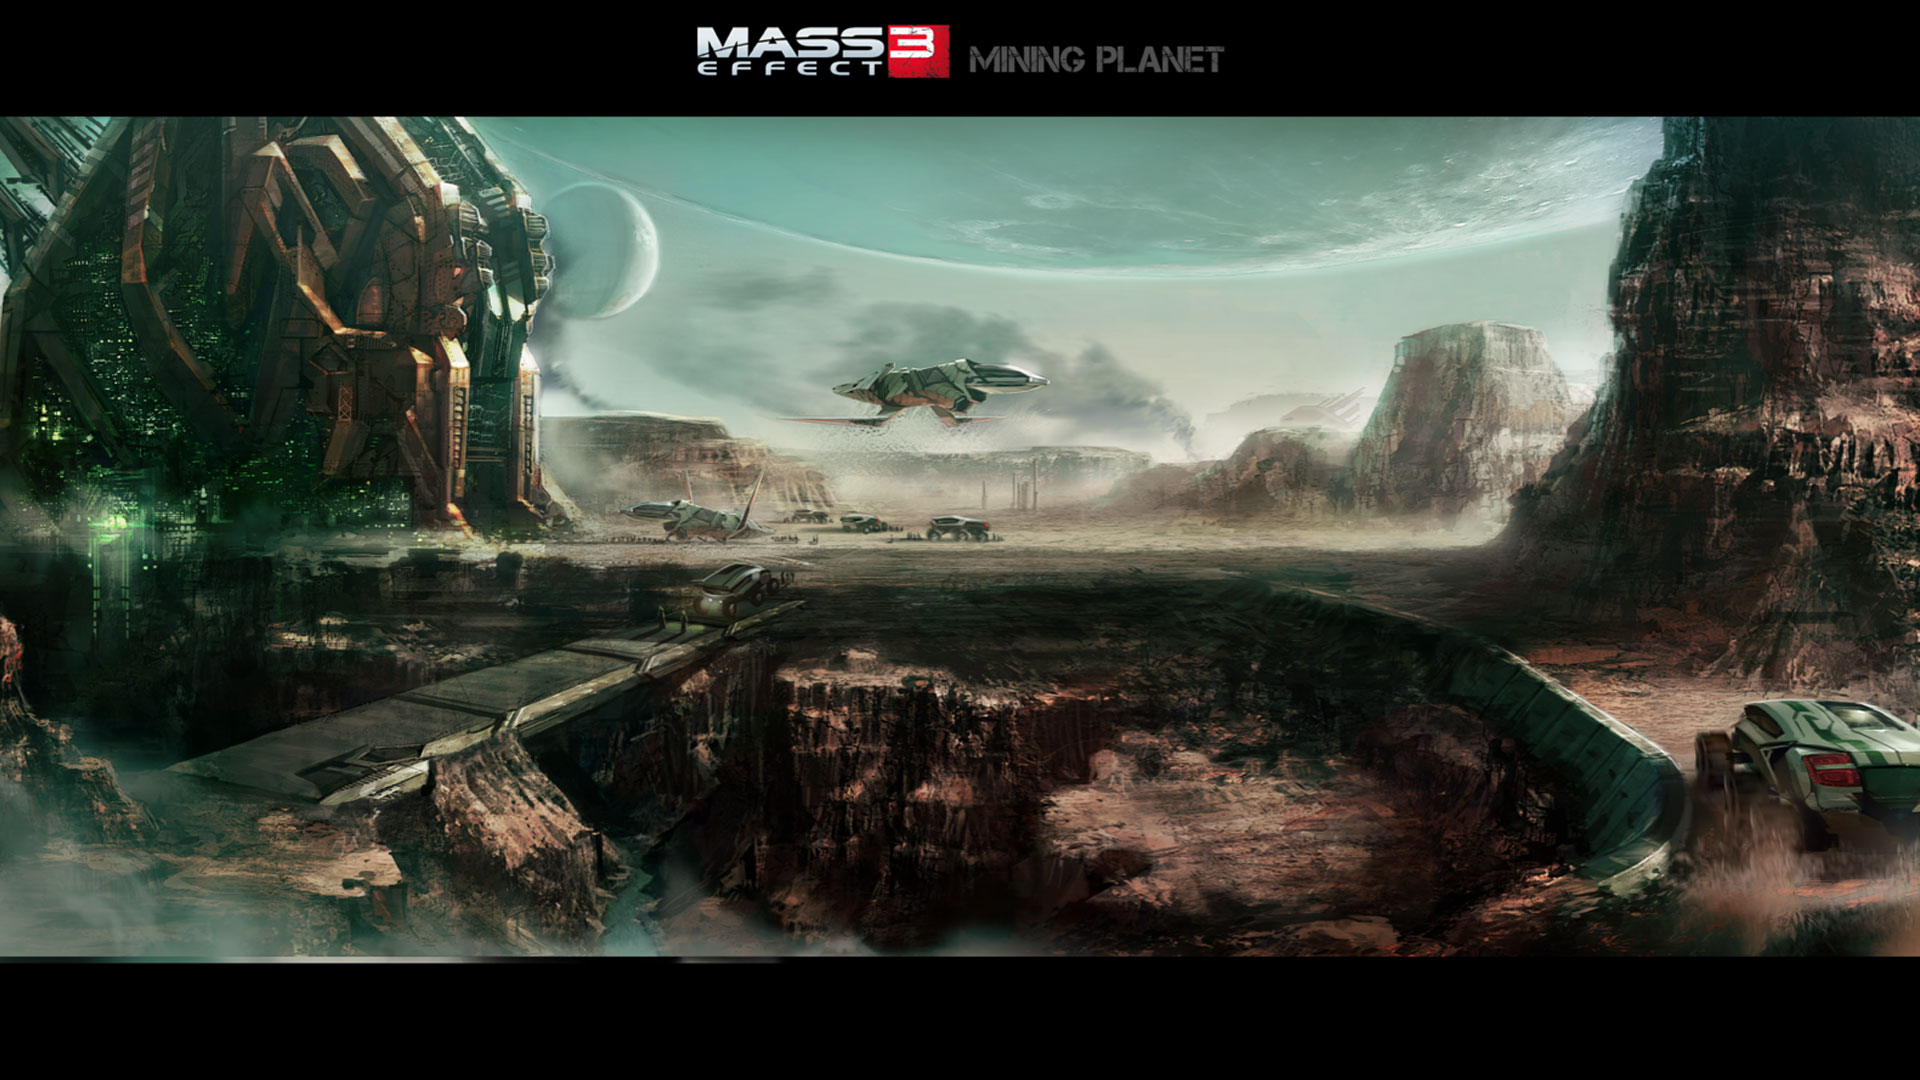 Mass Effect 3 Wallpapers - 3